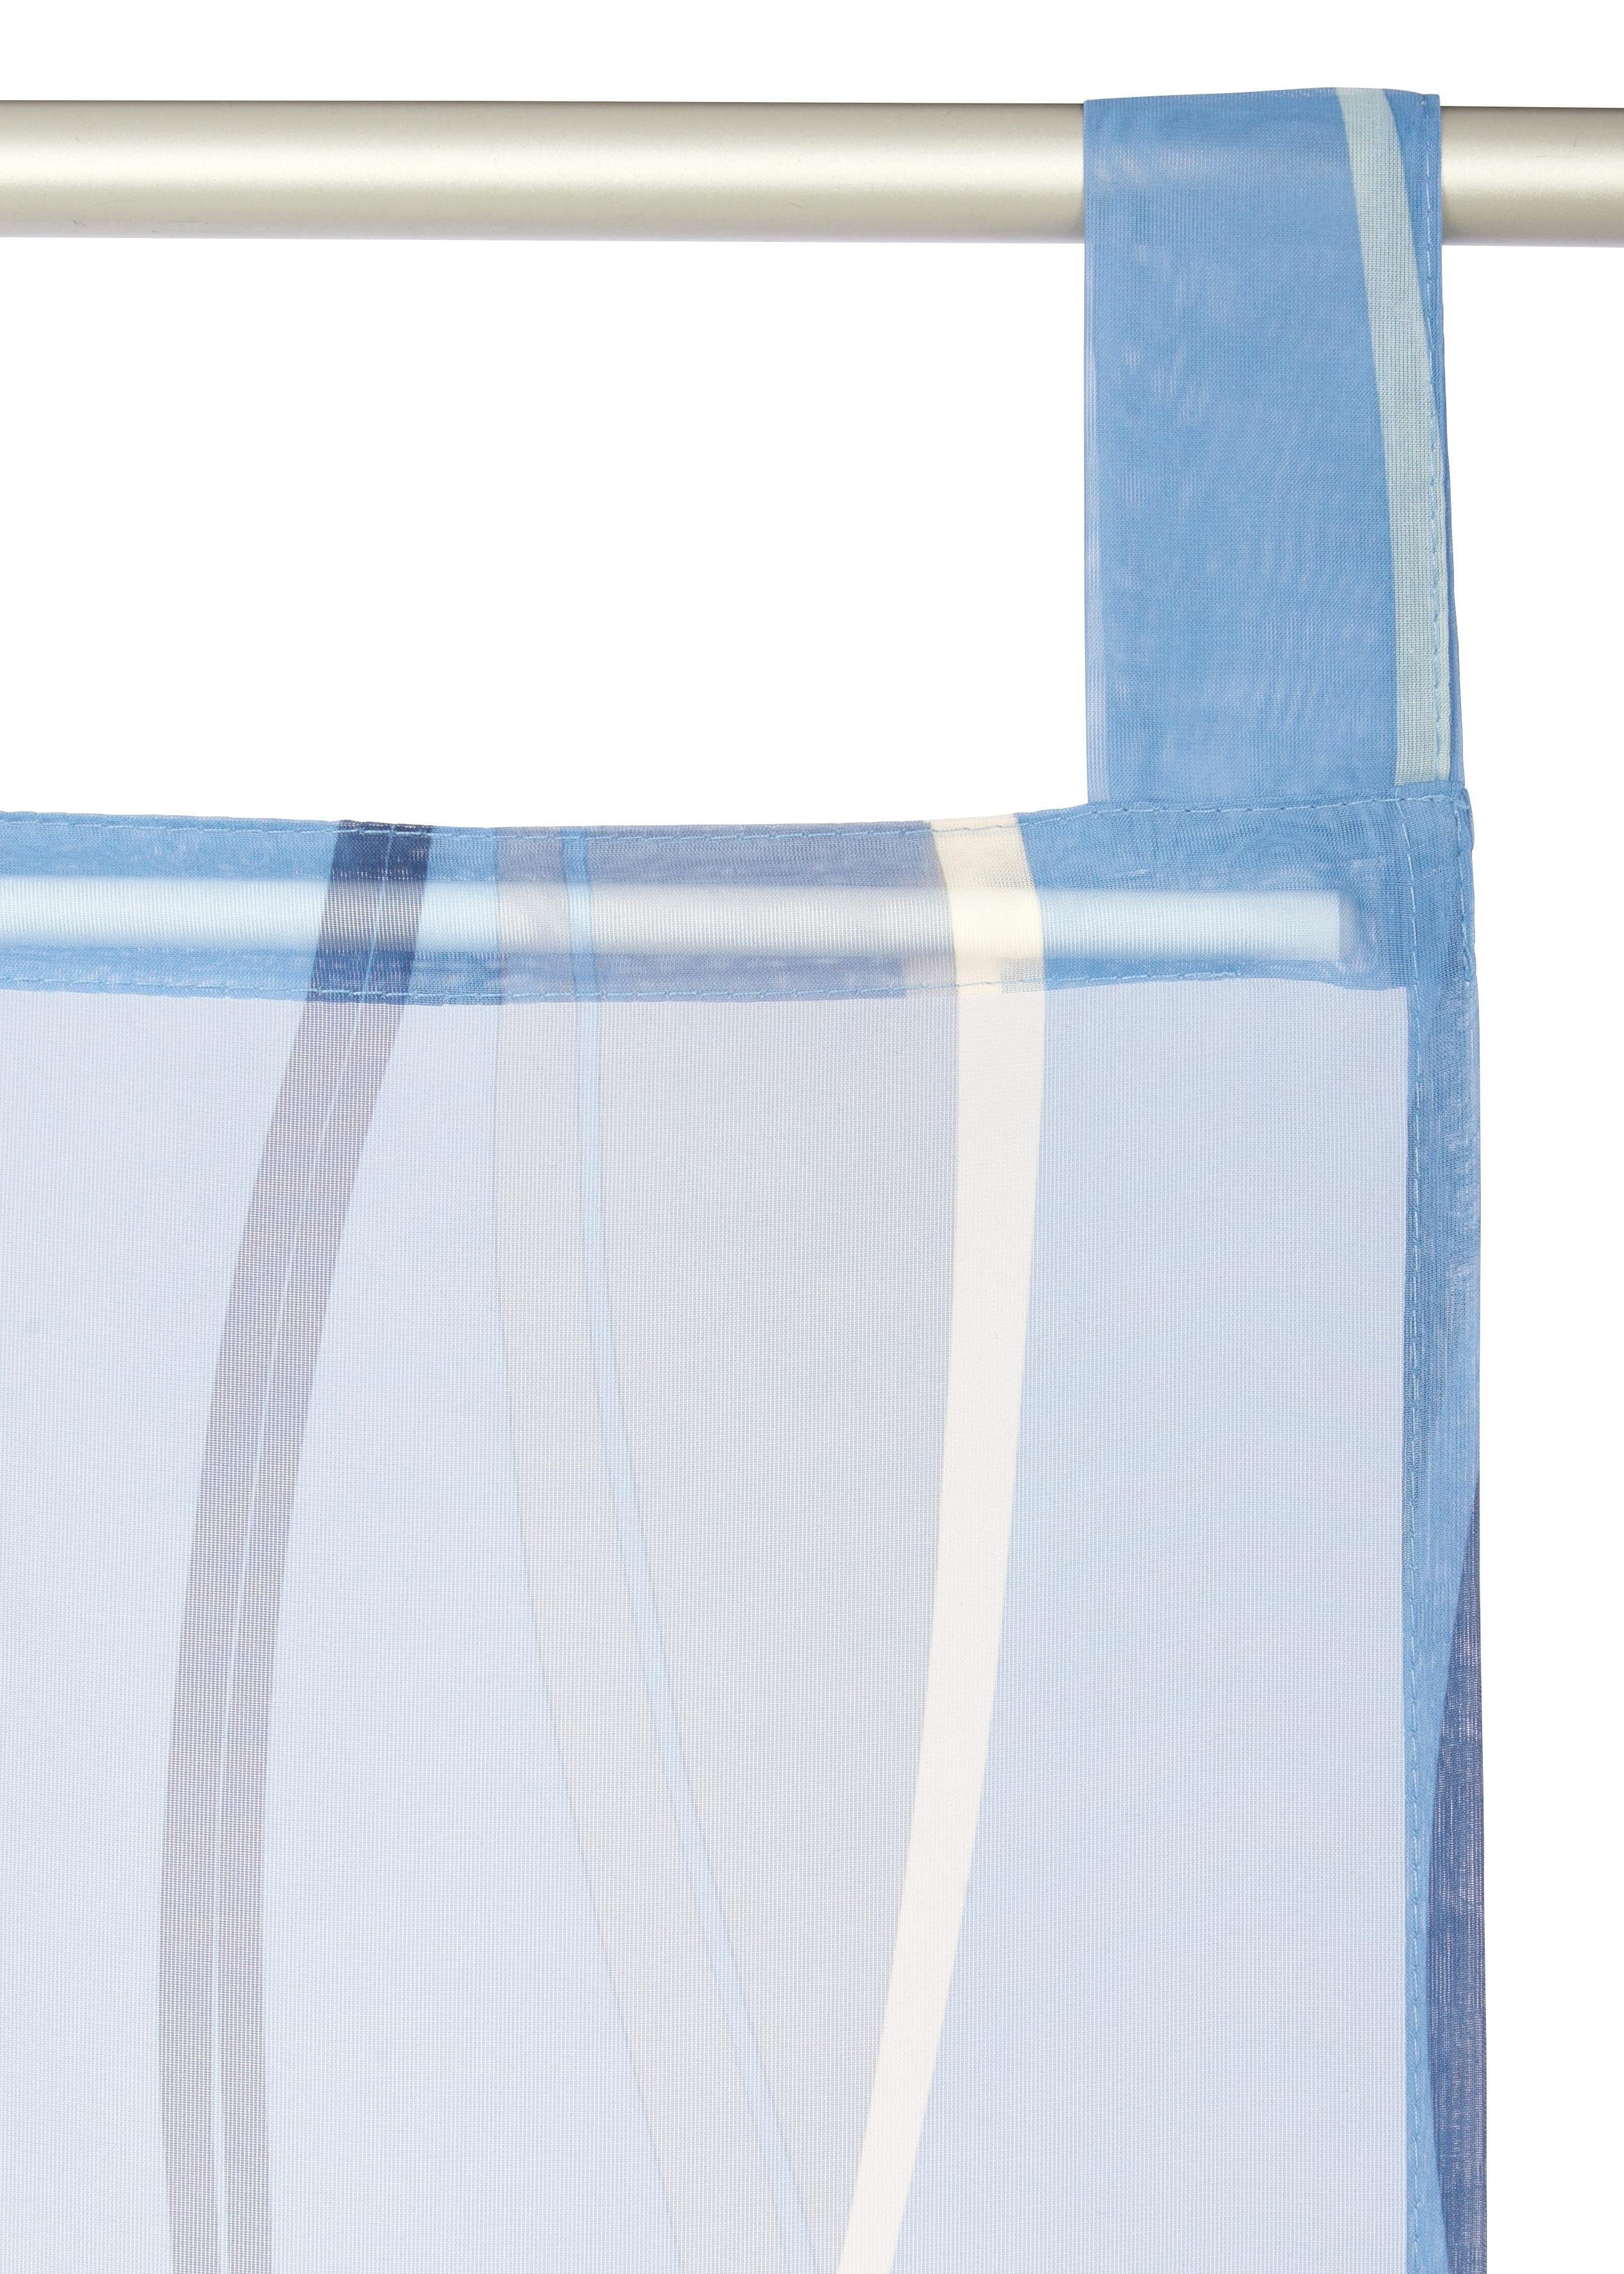 Schiebegardine Dimona, my home, (2 St), blau/weiß Beschwerungsstange, Schlaufen Voile, transparent, Wellen transparent, 2er-Set, Fertiggardine, inkl